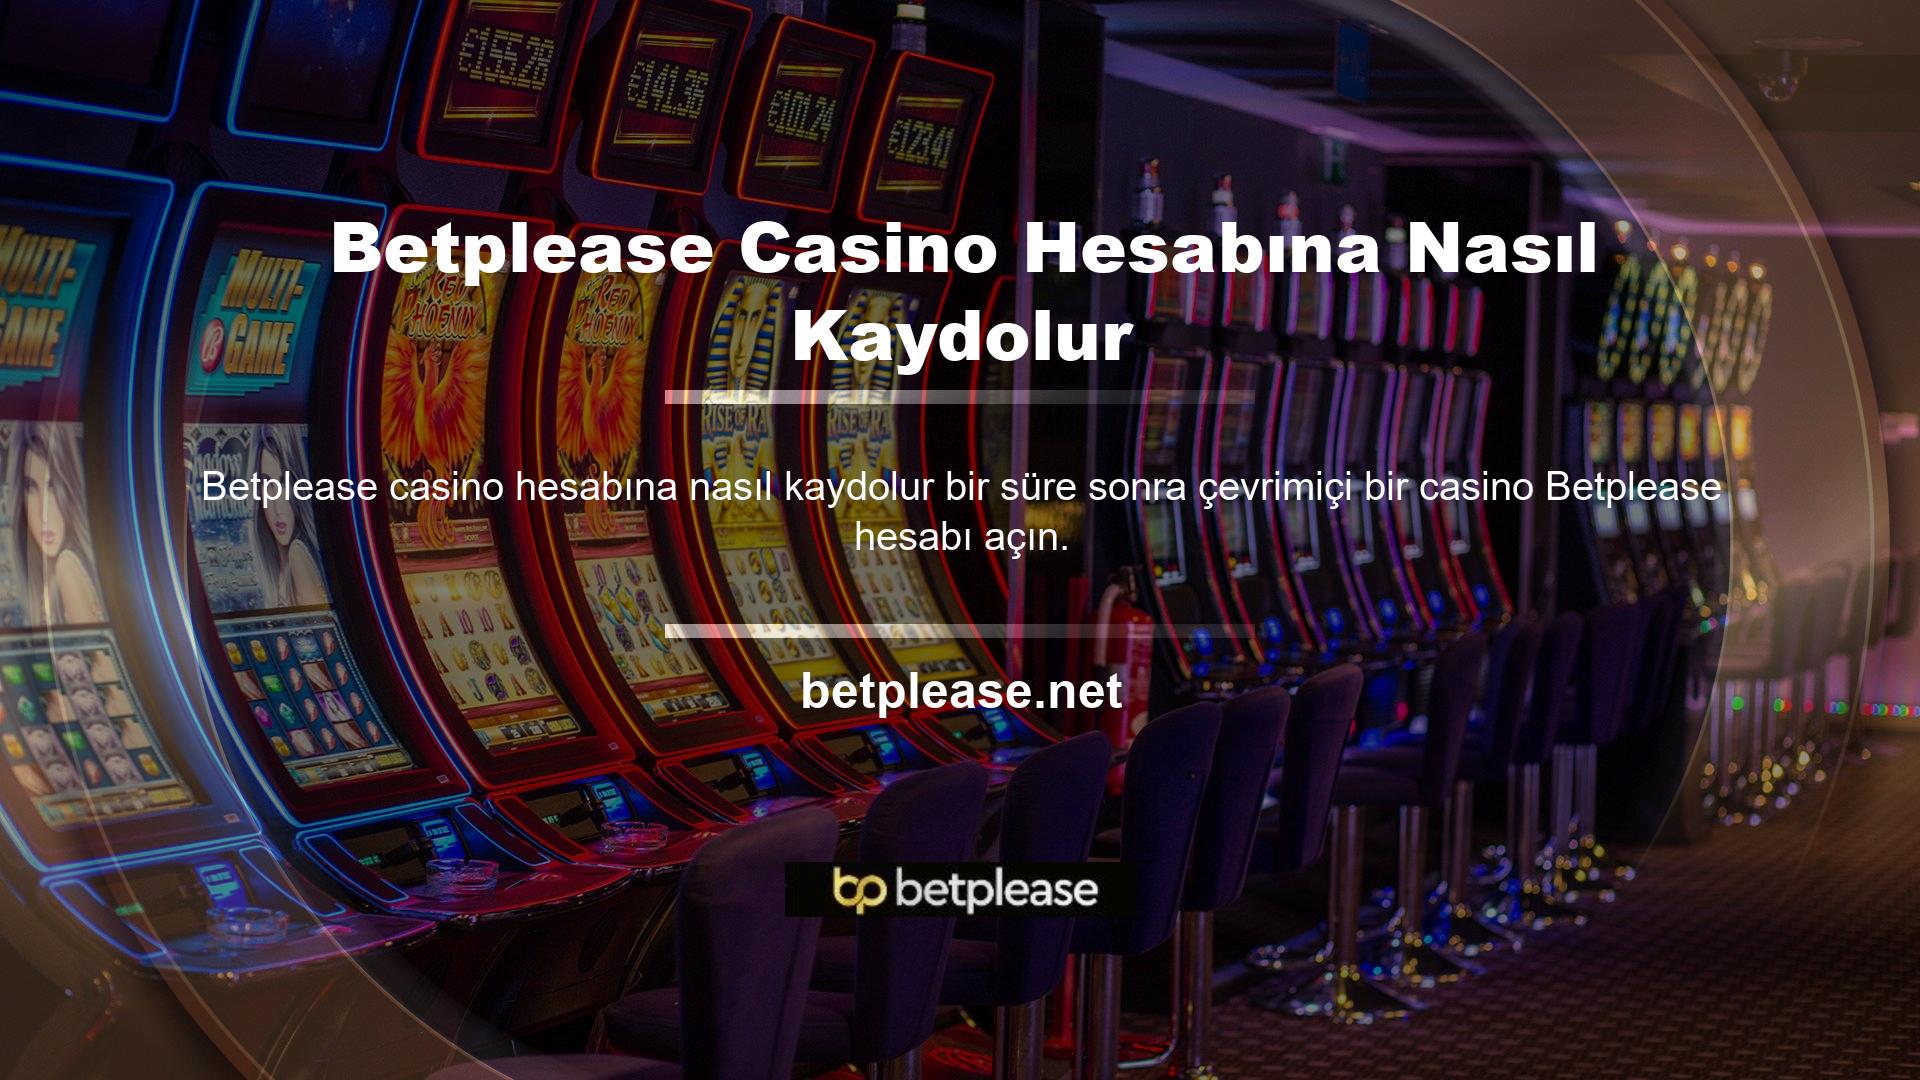 Canlı casino sitelerinde kalite ve güvenlik oyuncular için çok önemlidir